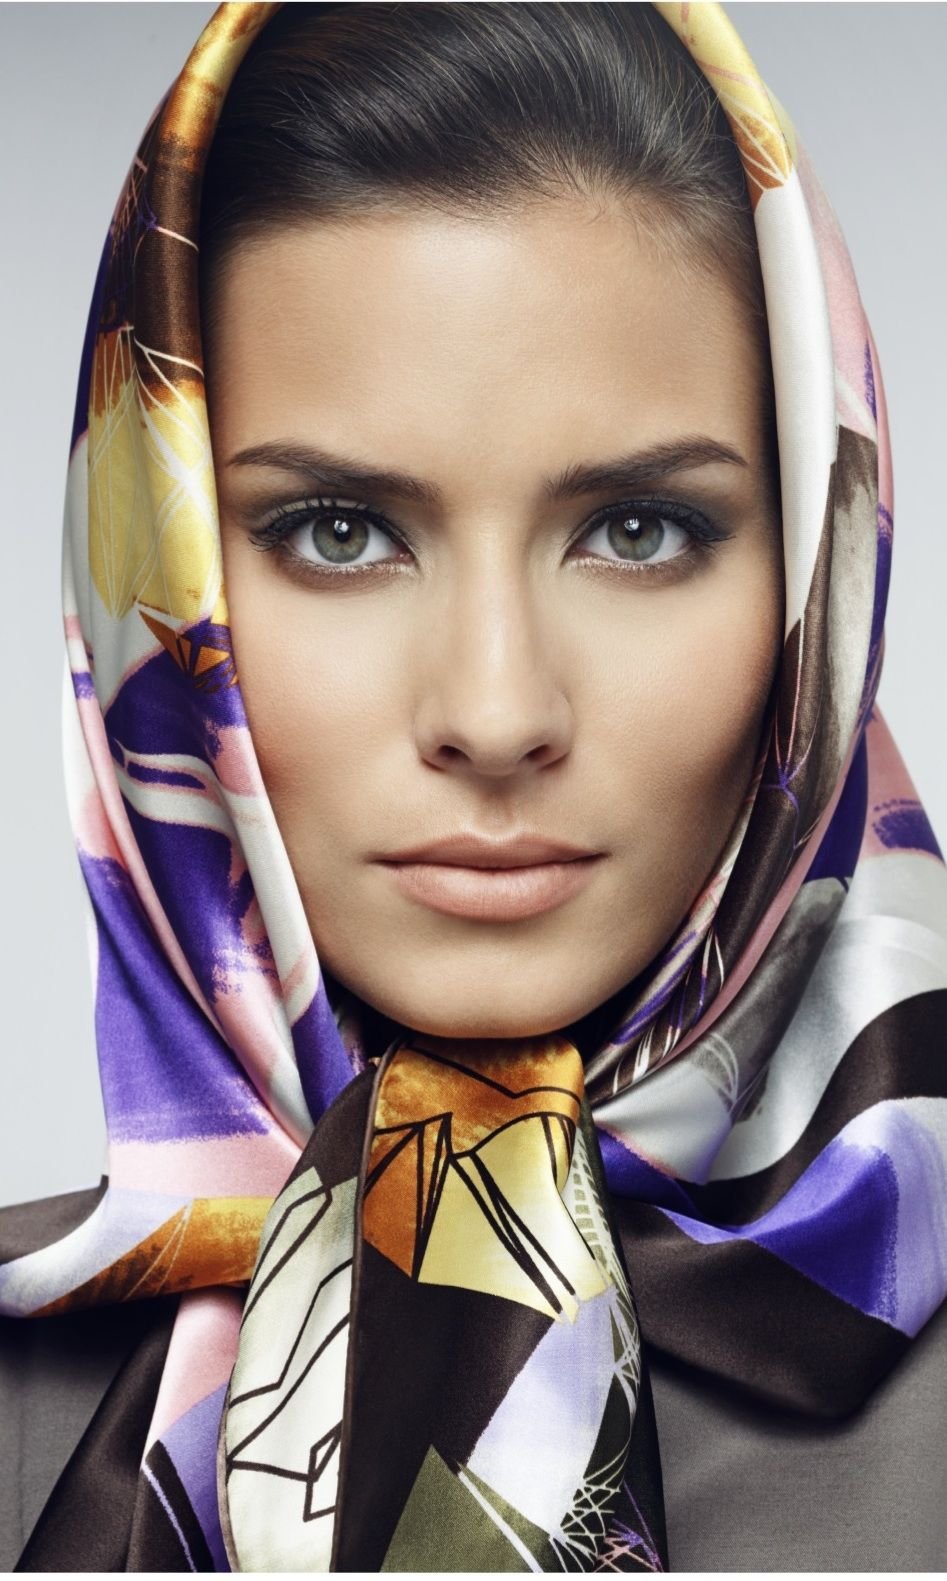 Образцы платков. Платок на голову. Шелковый платок на голову. Женщина в платке. Платки на голову для женщин.